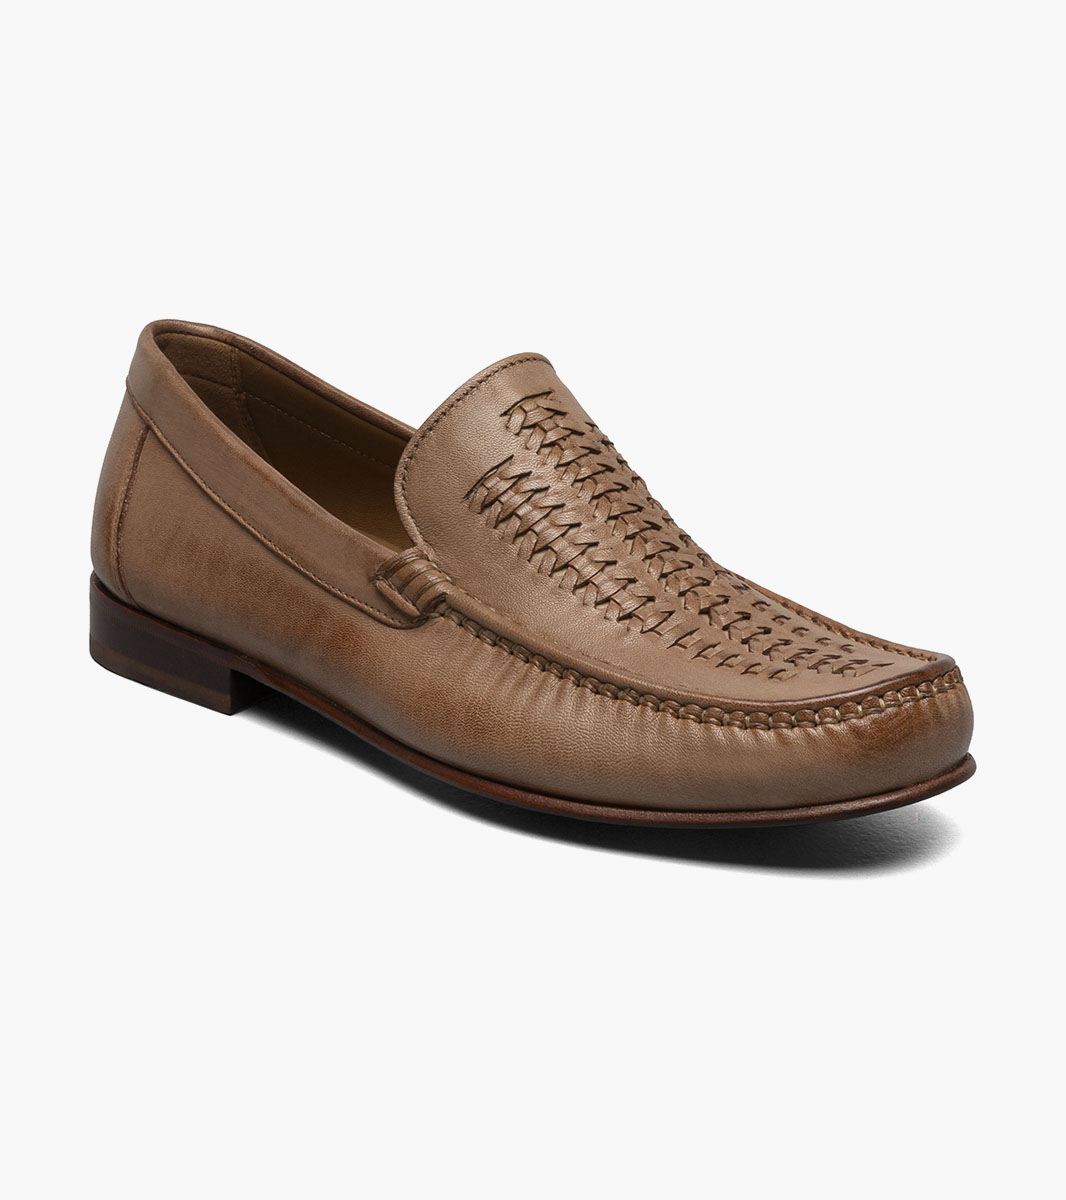 Florsheim Shoes Beaufort Moc Toe Weave Loafer Natural Size 7